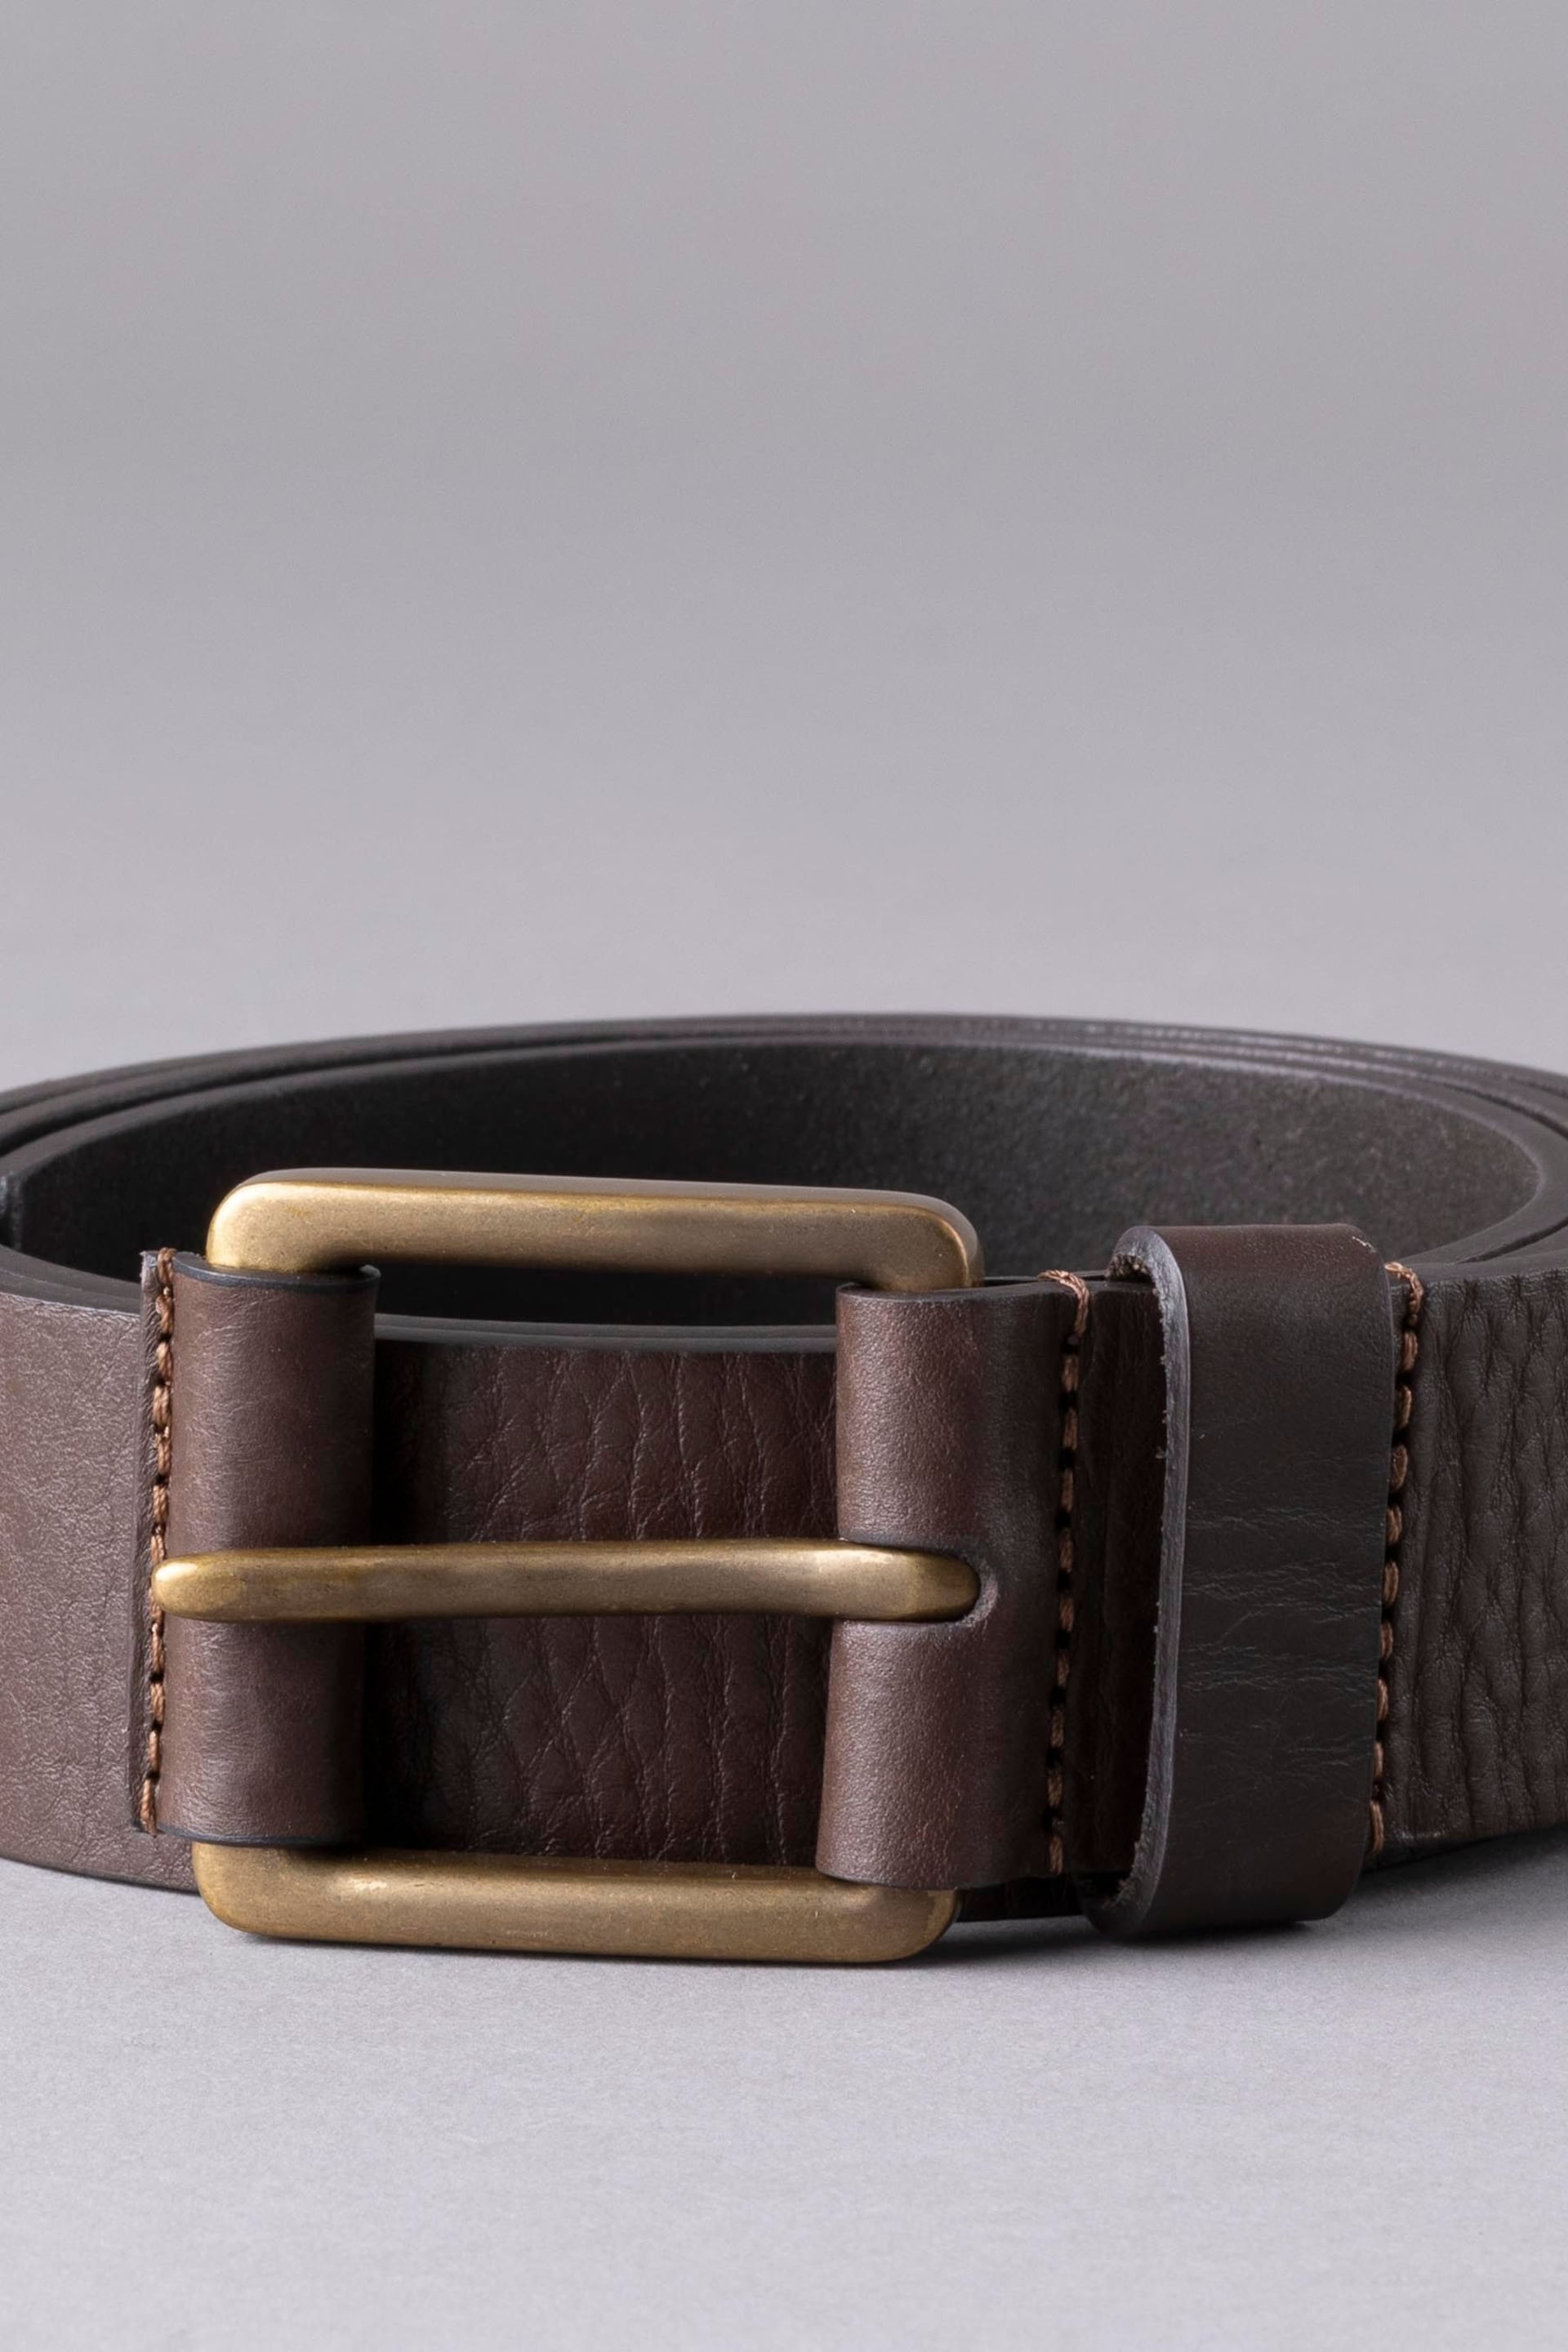 Lakeland Leather Brown Braithwaite Leather Belt - Image 2 of 3